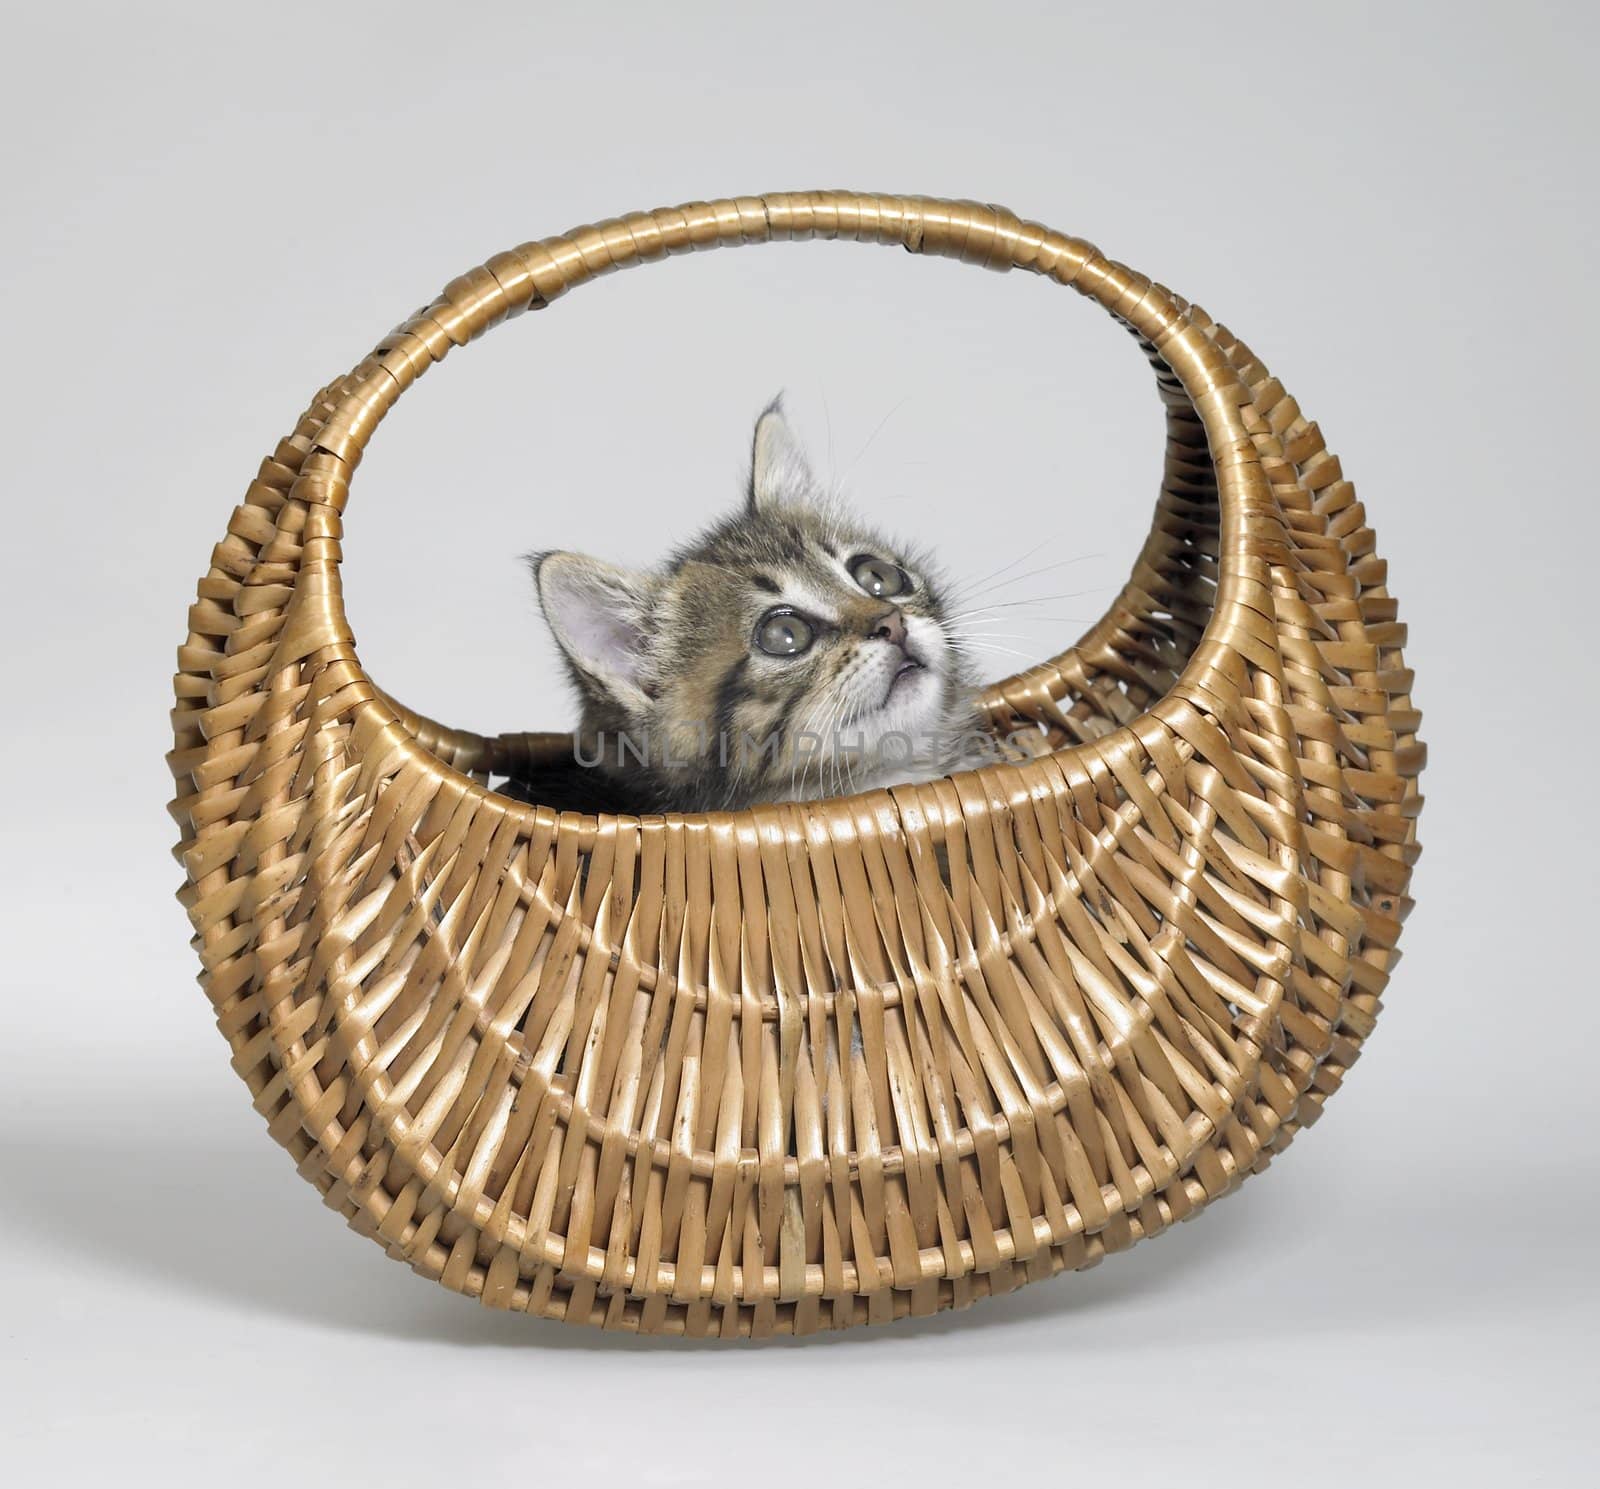 kitten looking up in basket by gewoldi